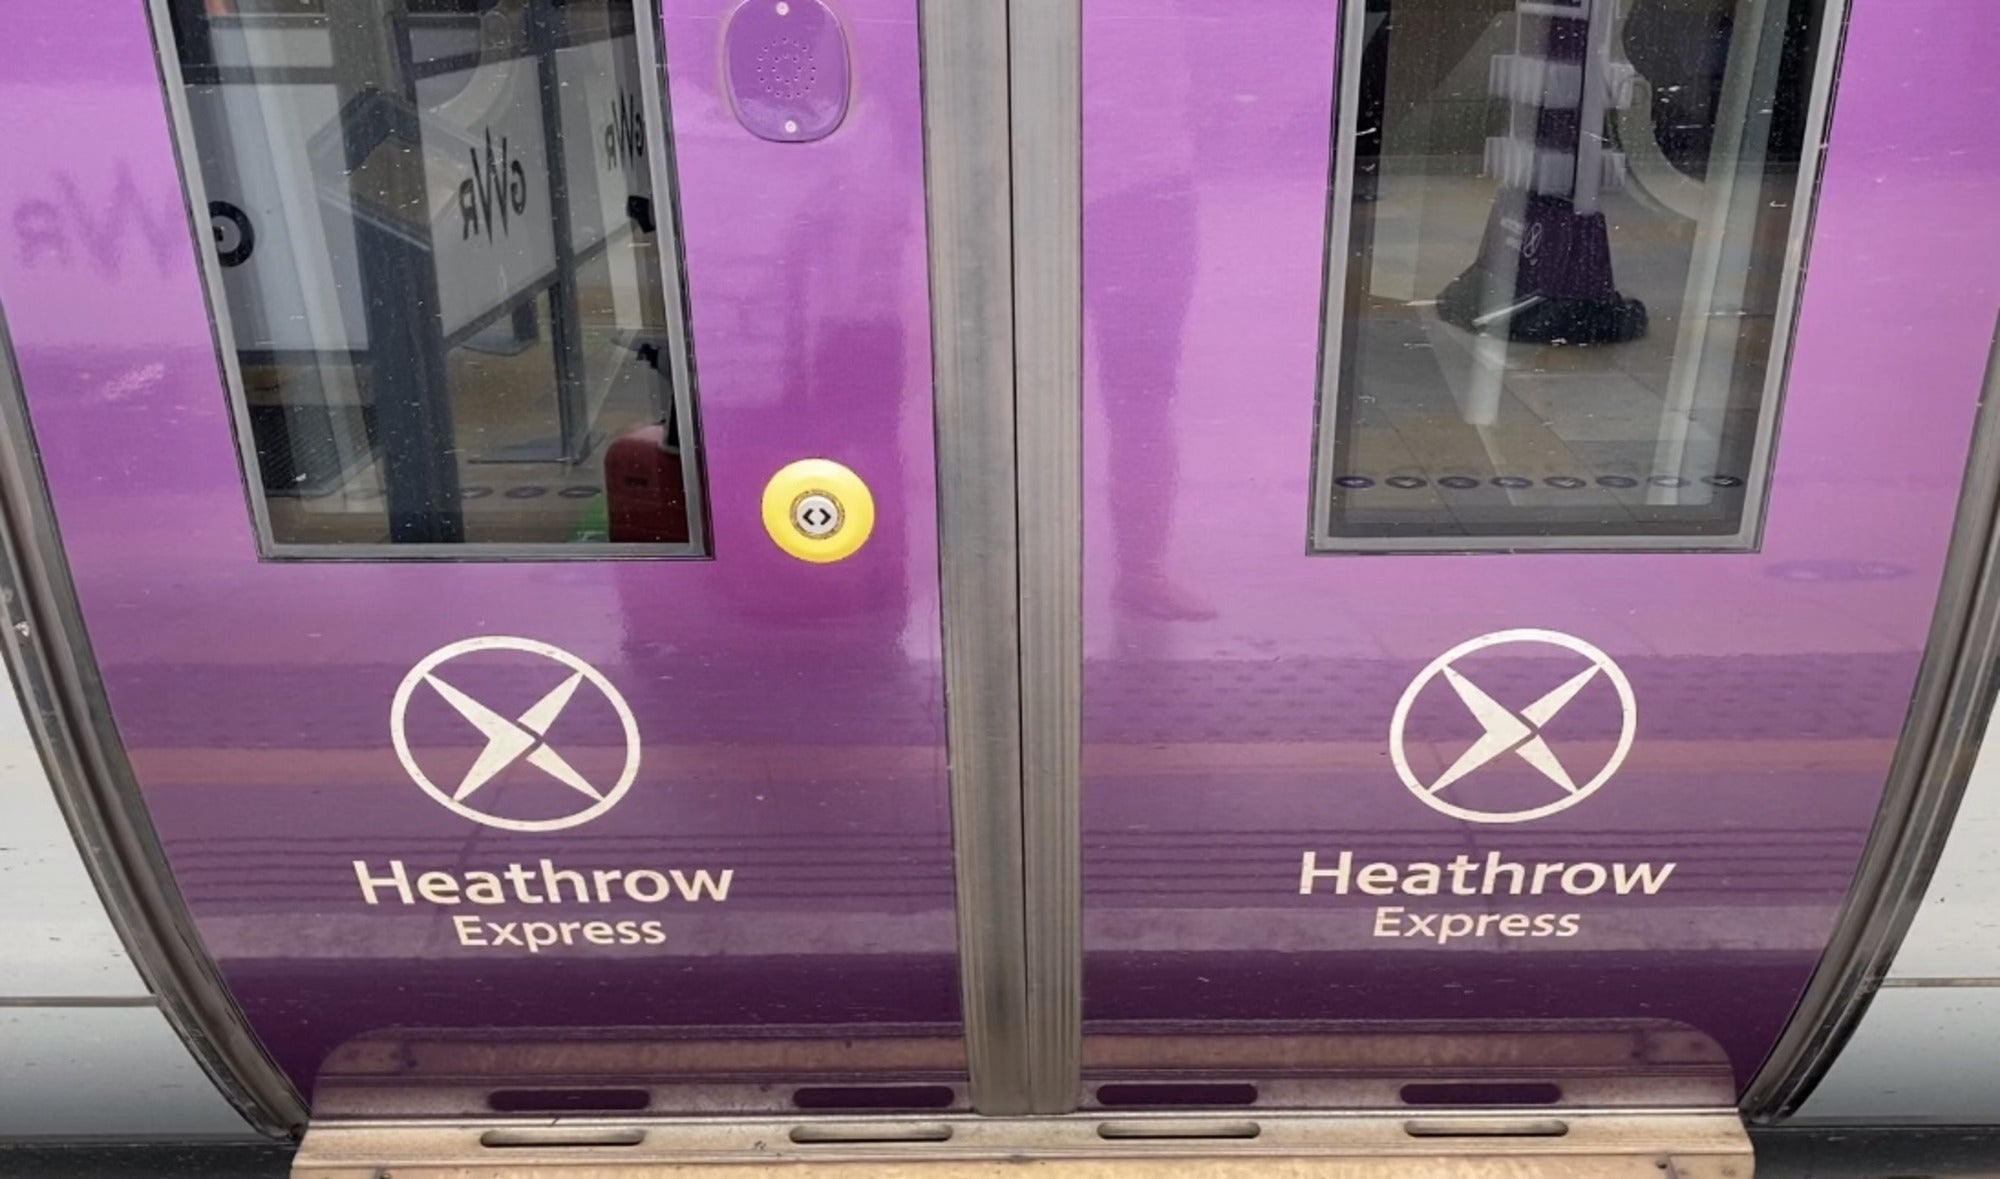 Heathrow Express doors